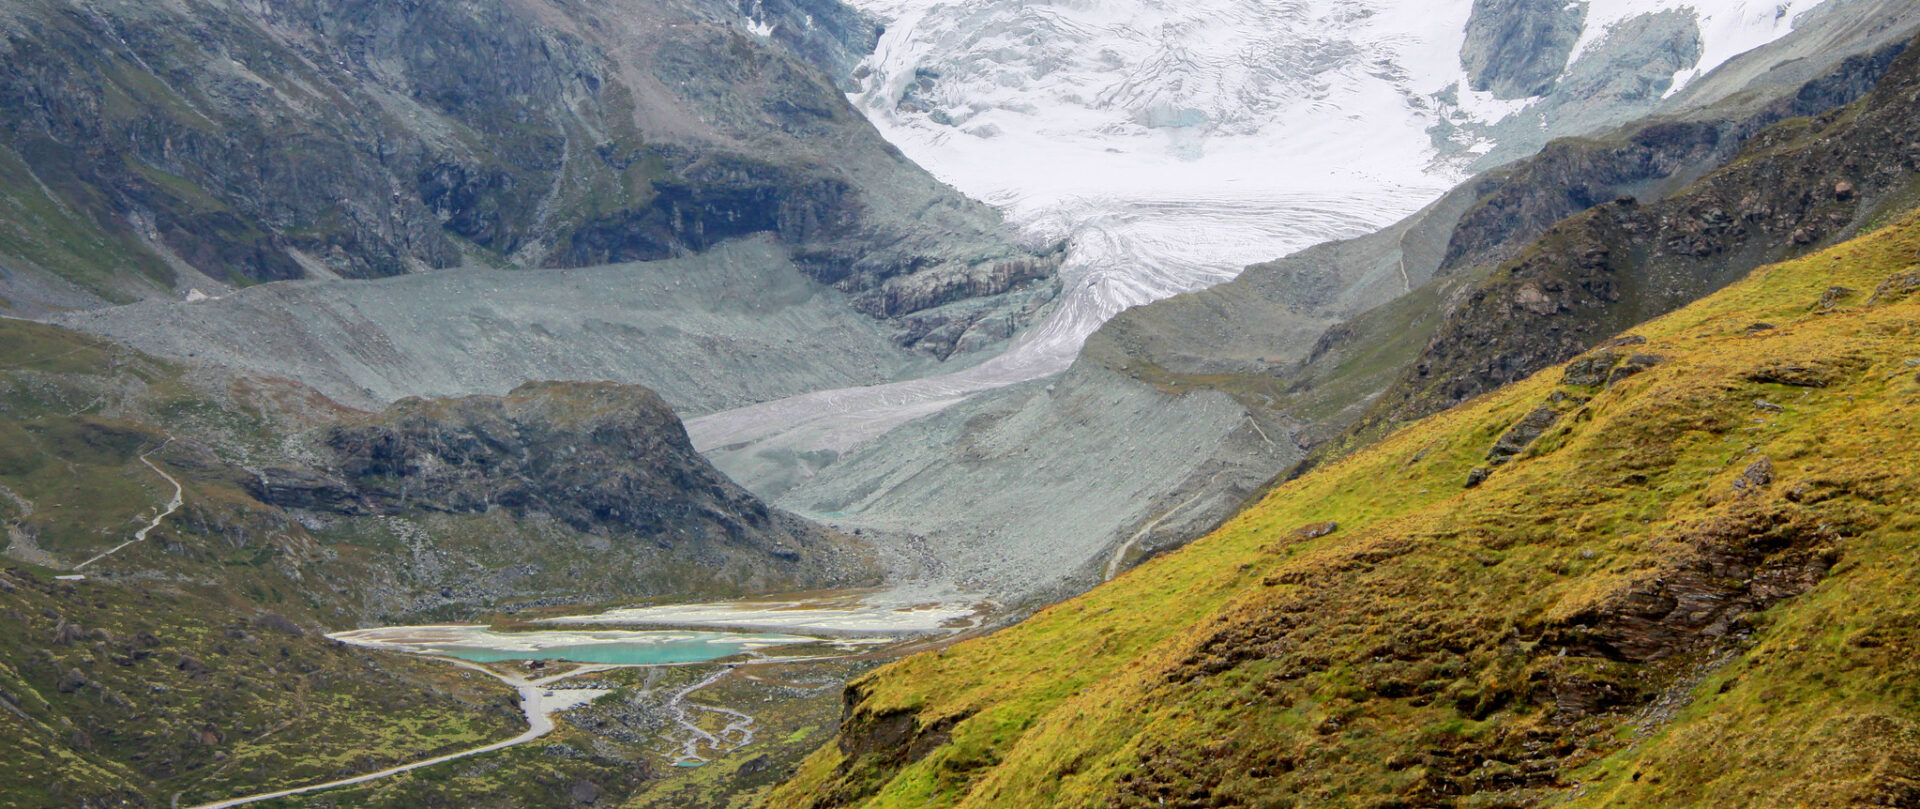 Le changement climatique met en cause la croissance économique | photo: glacier du Moiry (Grimentz) © Guillaume Baviere/Flickr/CC BY 2.0